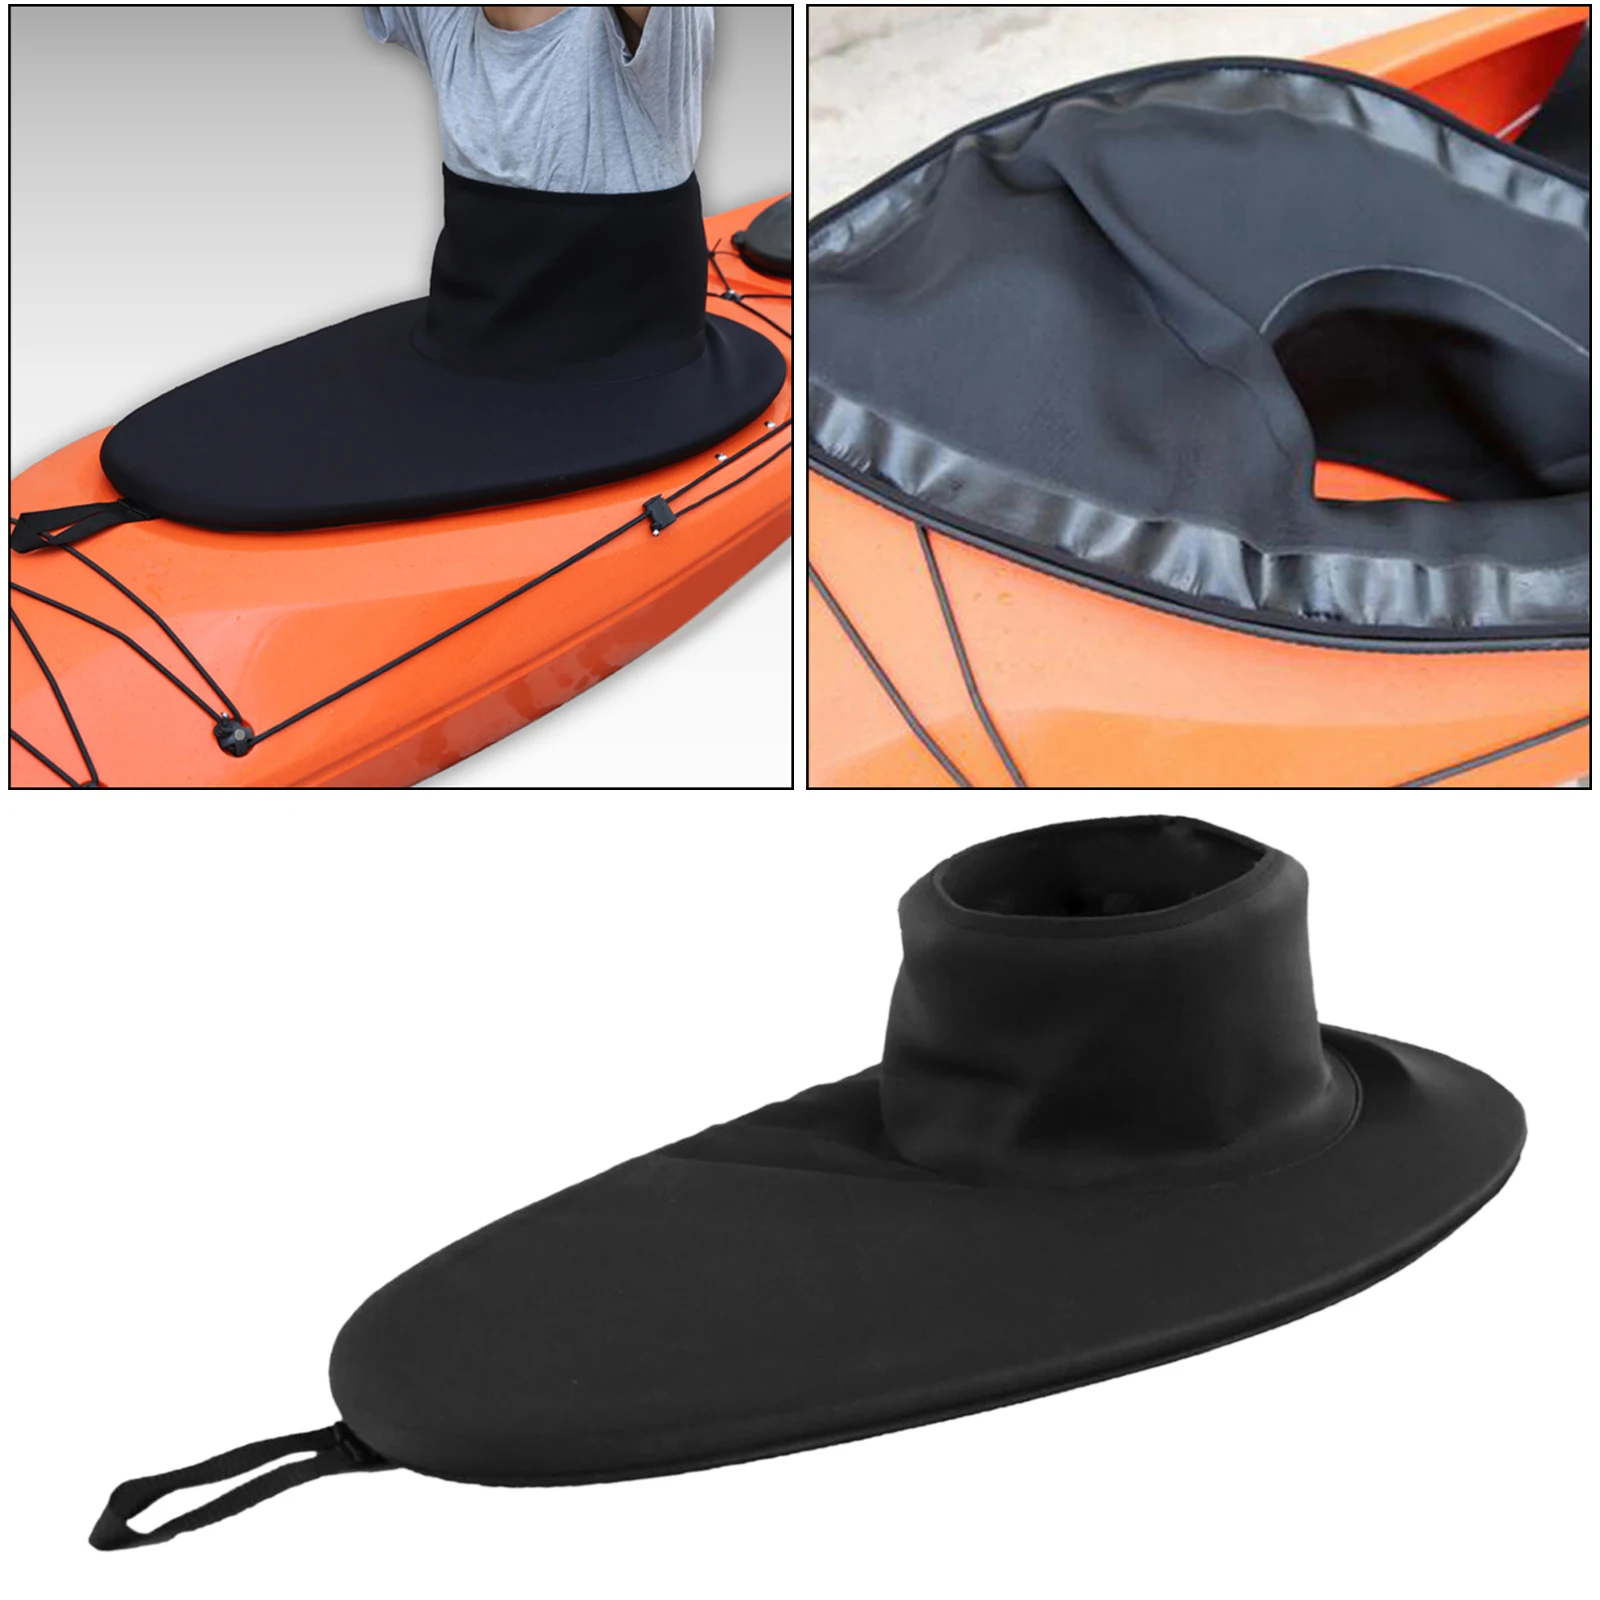 Kayak Canoe Marine Boat Spraydeck Spray Skirt Waterproof Cockpit Cover Black